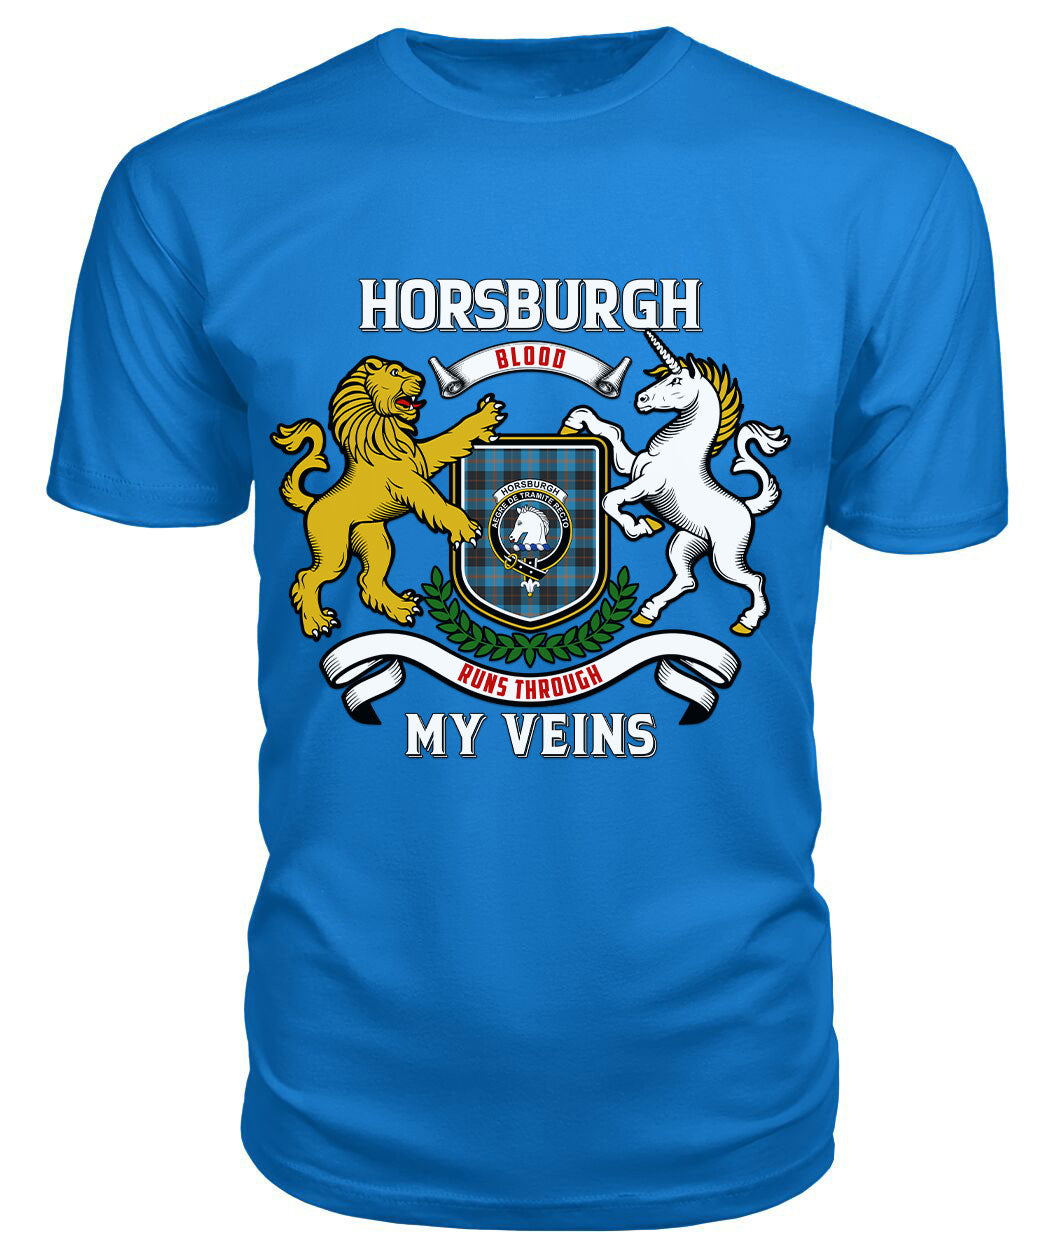 Horsburgh Tartan Crest 2D T-shirt - Blood Runs Through My Veins Style